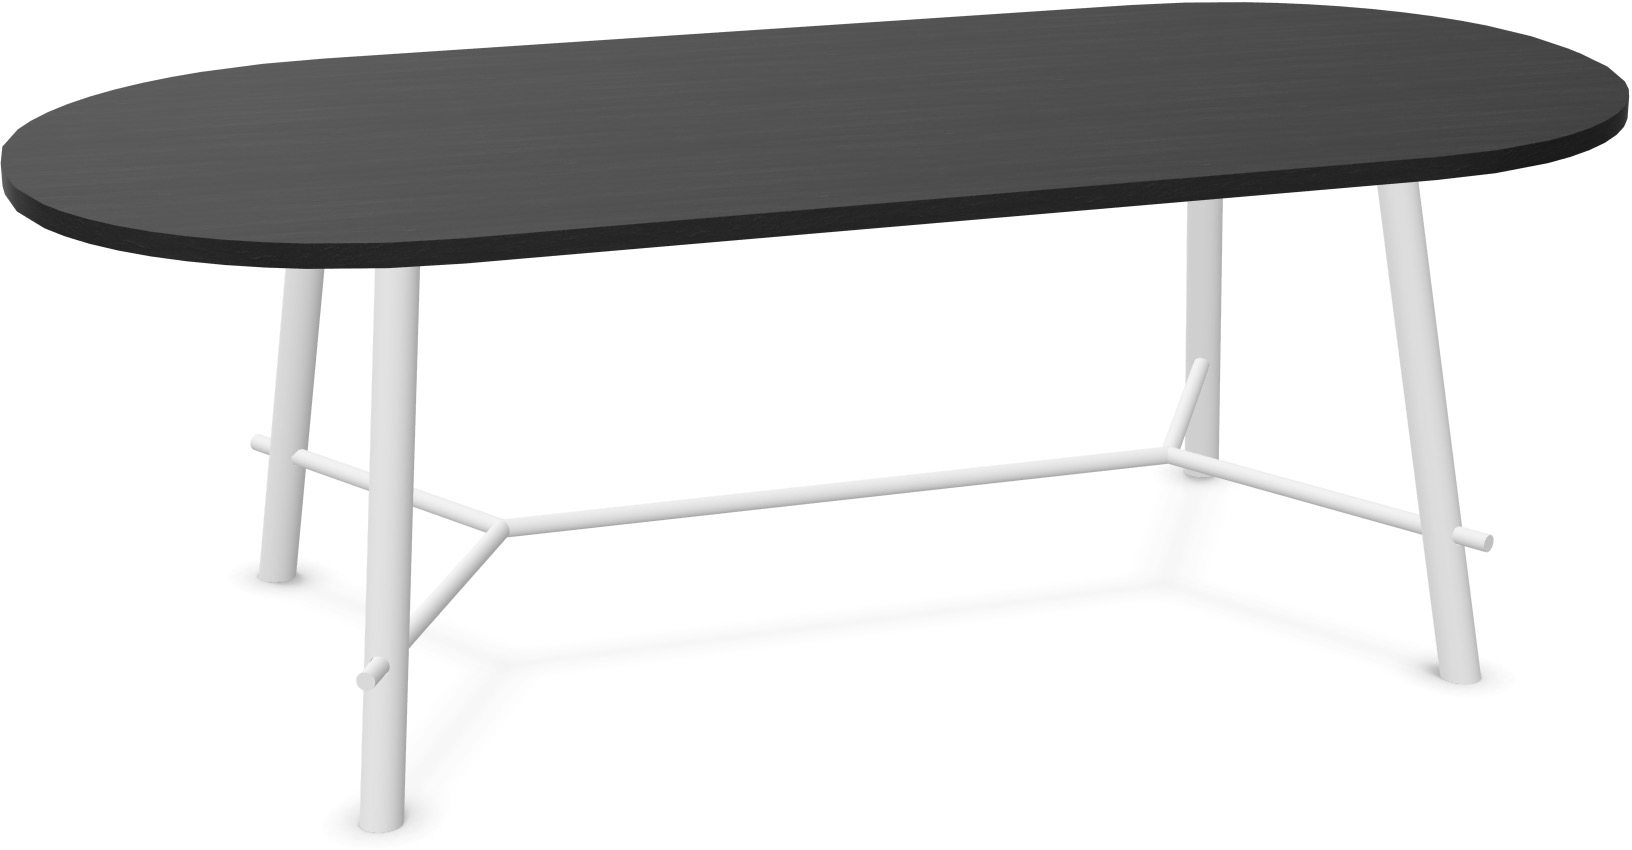 Record Living Tisch in Eiche schwarz / Eiche weiss präsentiert im Onlineshop von KAQTU Design AG. Esstisch ist von Infiniti Design